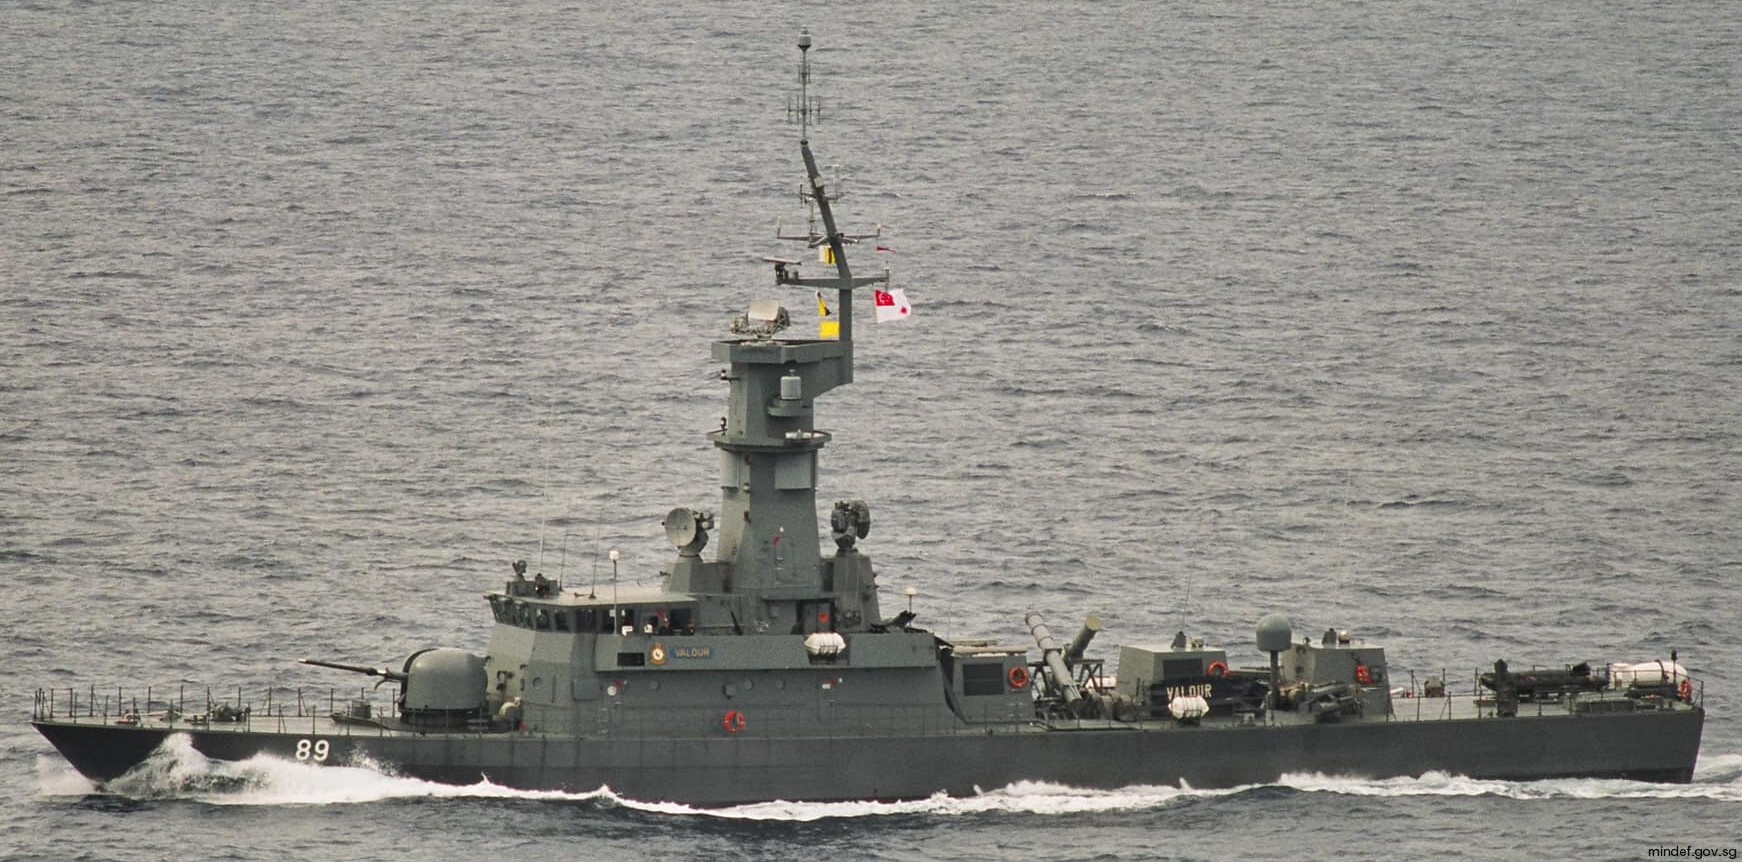 89 rss valour victory class missile corvette republic singapore navy 03